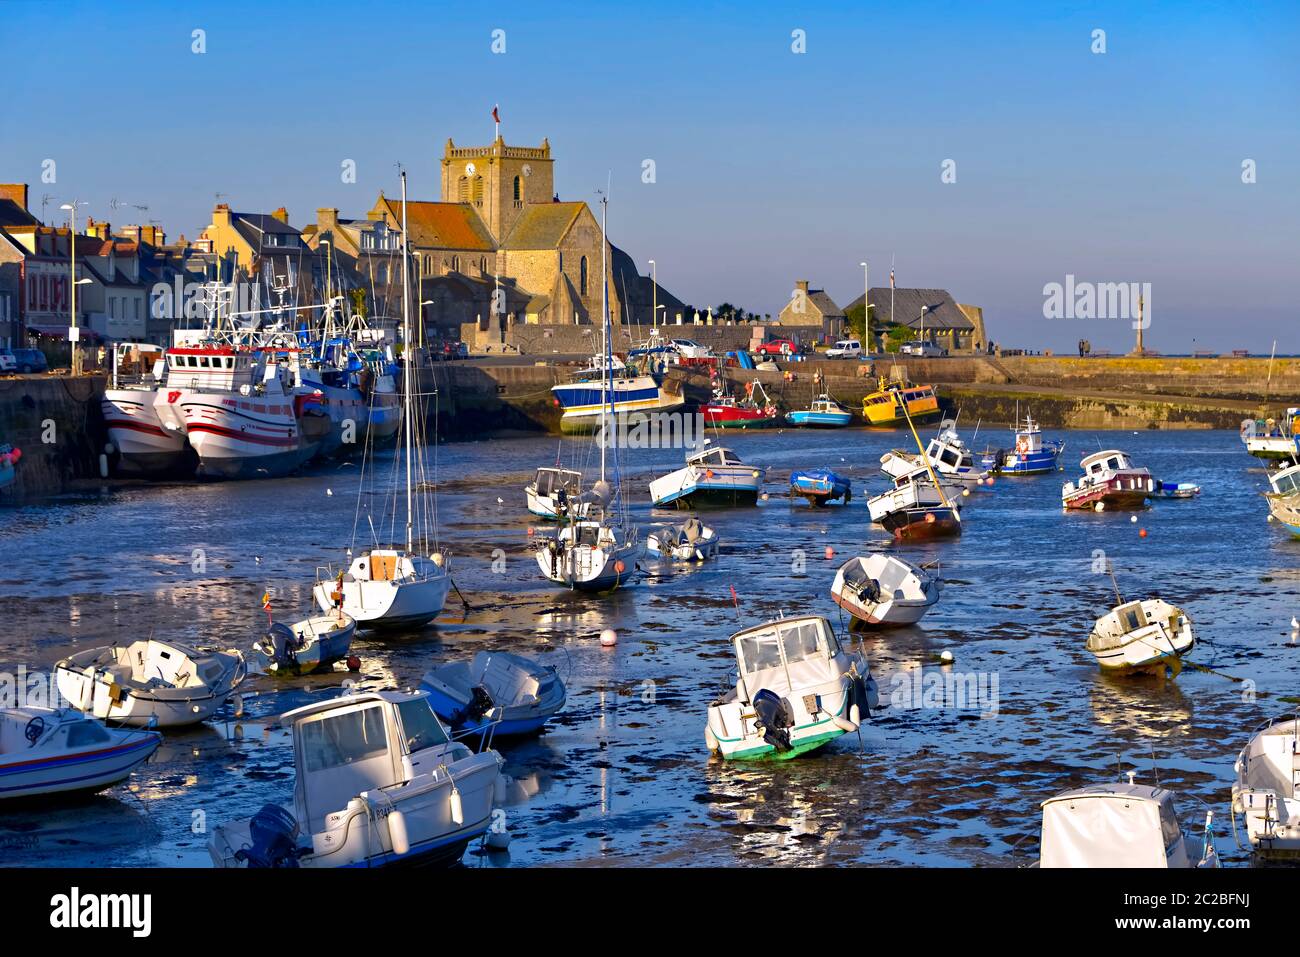 Porto a bassa marea alla fine della giornata di sole e la chiesa di Saint-Nicolas di Barfleur, un comune nella penisola del Cotentin in Francia Foto Stock